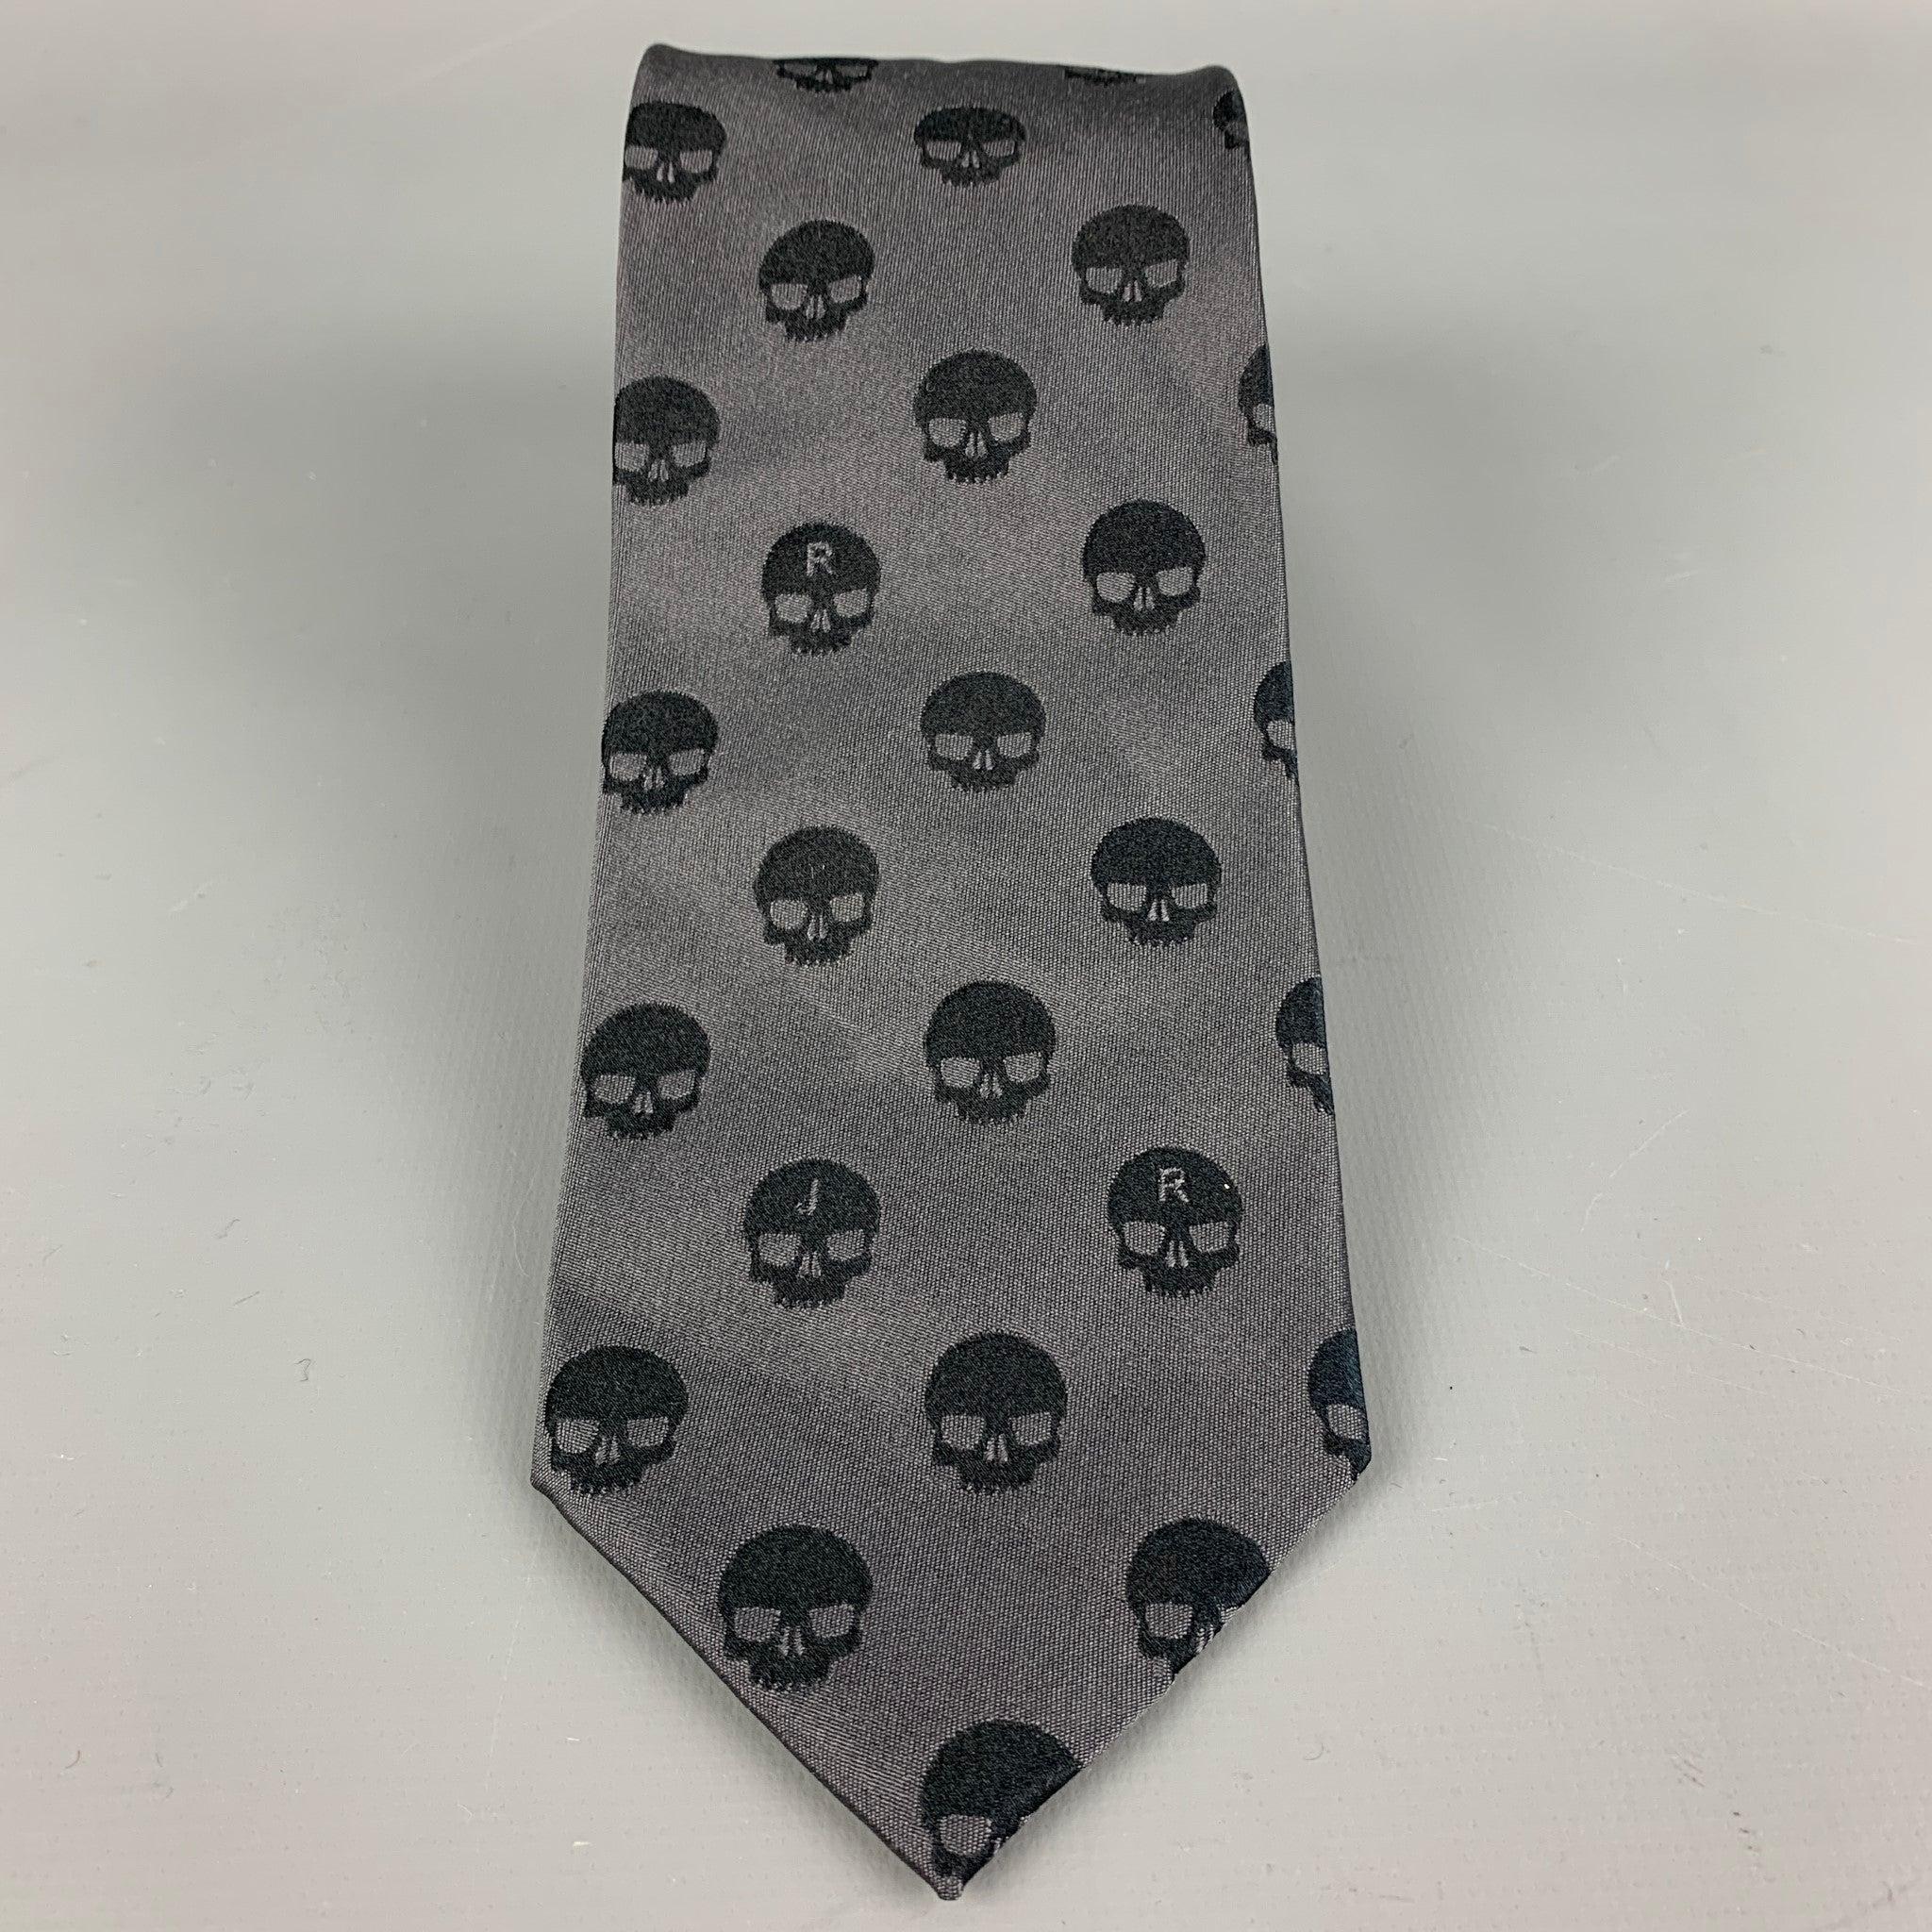 La cravate JOHN RICHMOND est proposée en soie imprimée tête de mort anthracite. Fabriquées en Italie. Très bien
Etat d'occasion. 

Mesures : 
  Largeur : 3,25 pouces 

  
  
 
Référence Sui Generis : 111348
Catégorie : Cravate
Plus de détails
   